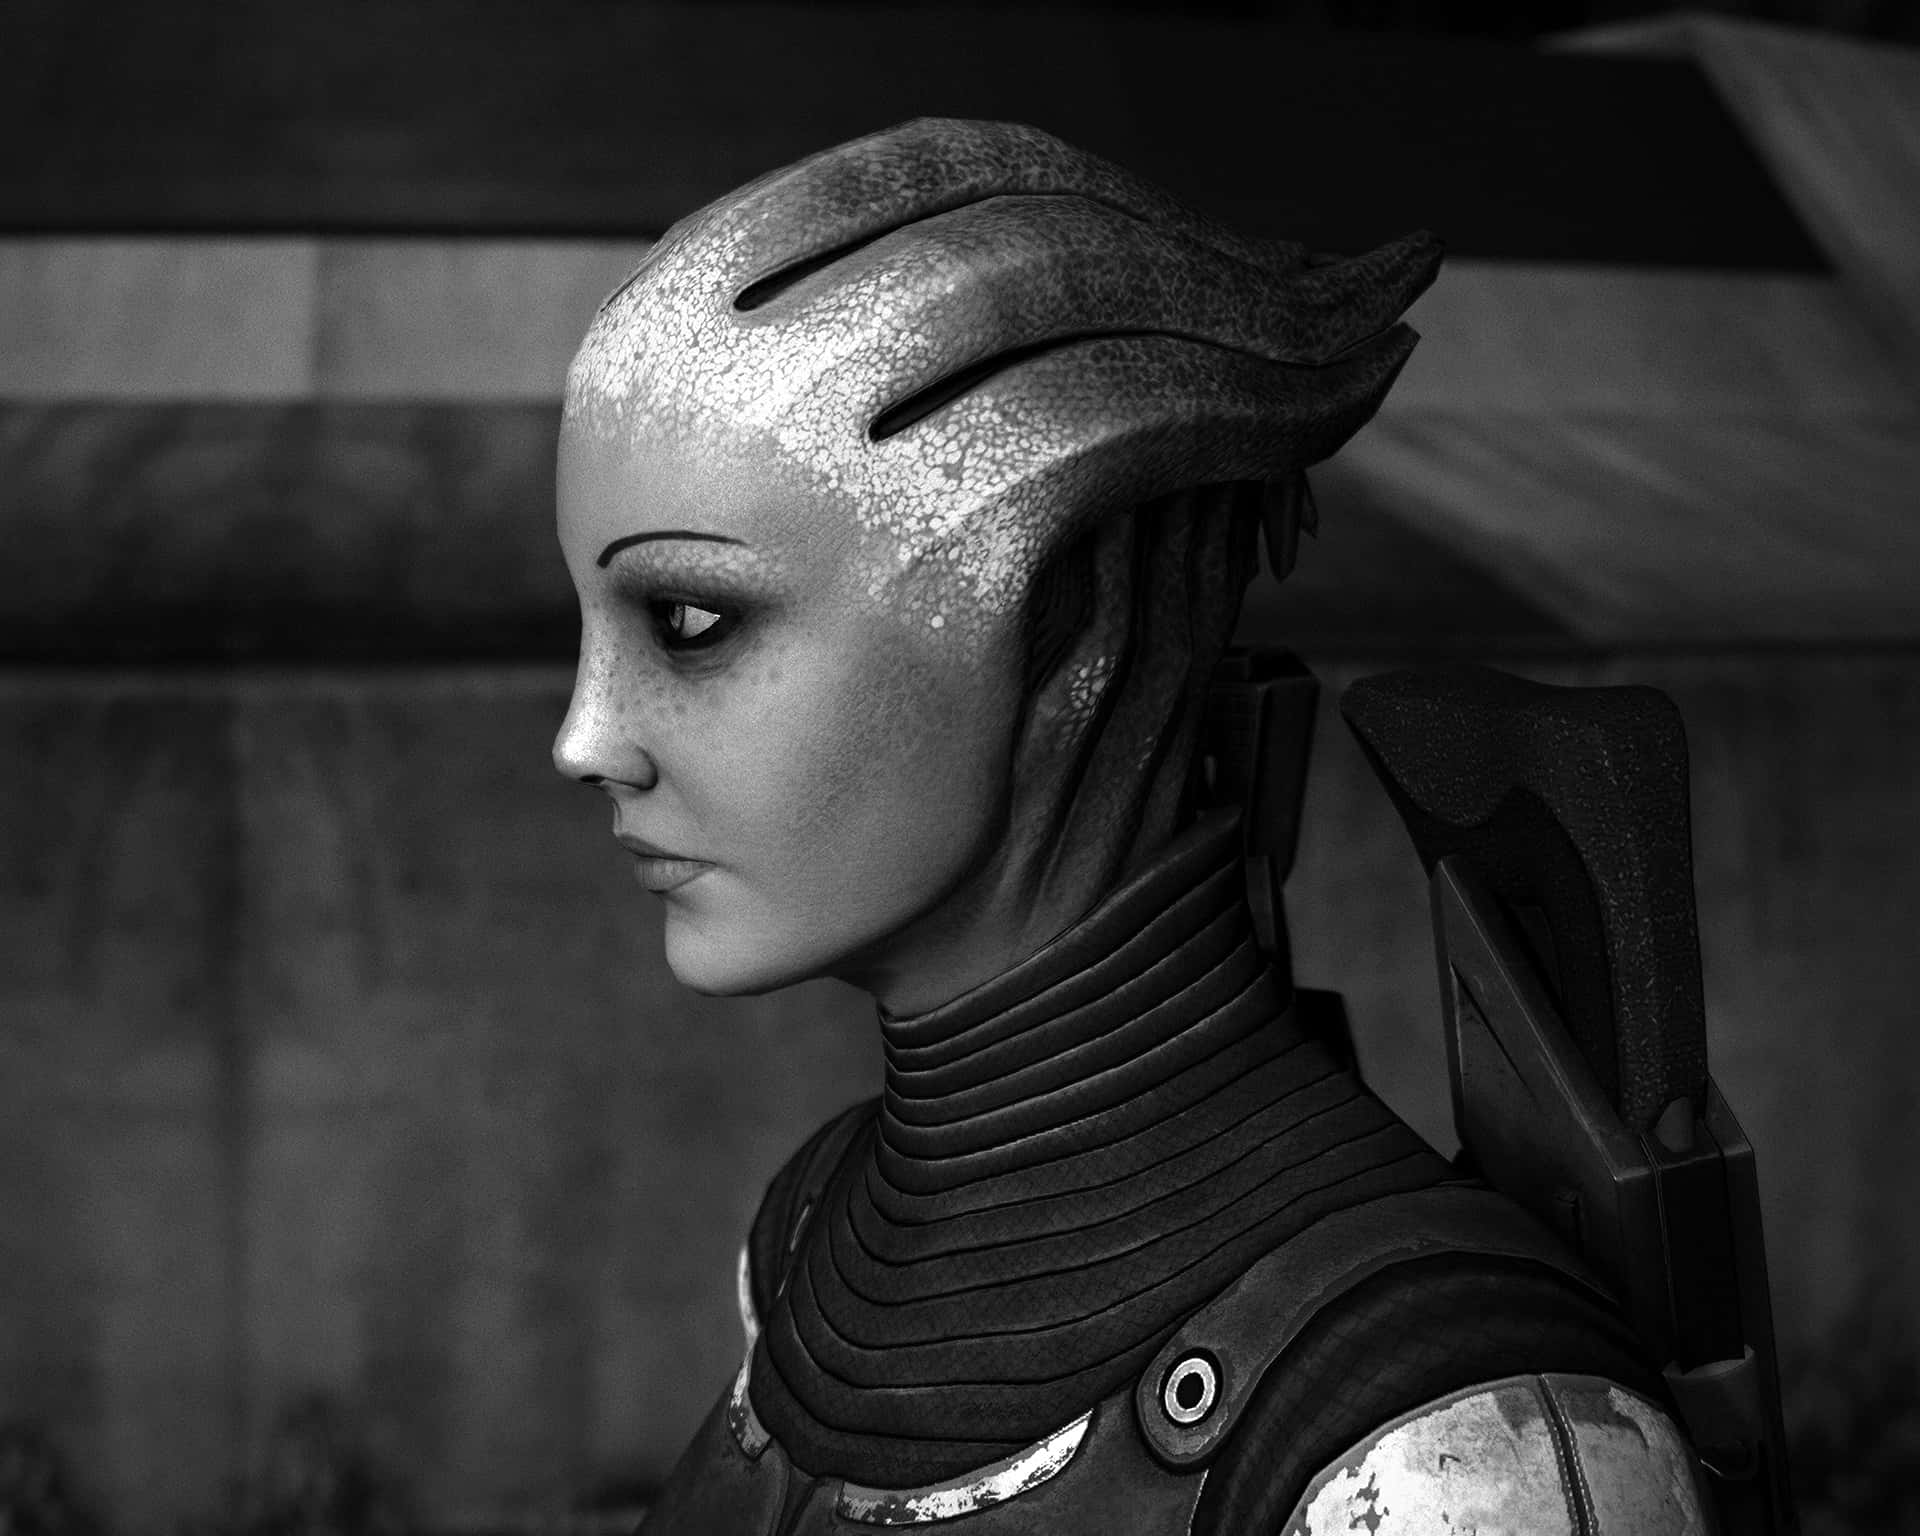 Liara T'soni, the intelligent Asari scientist in Mass Effect Wallpaper